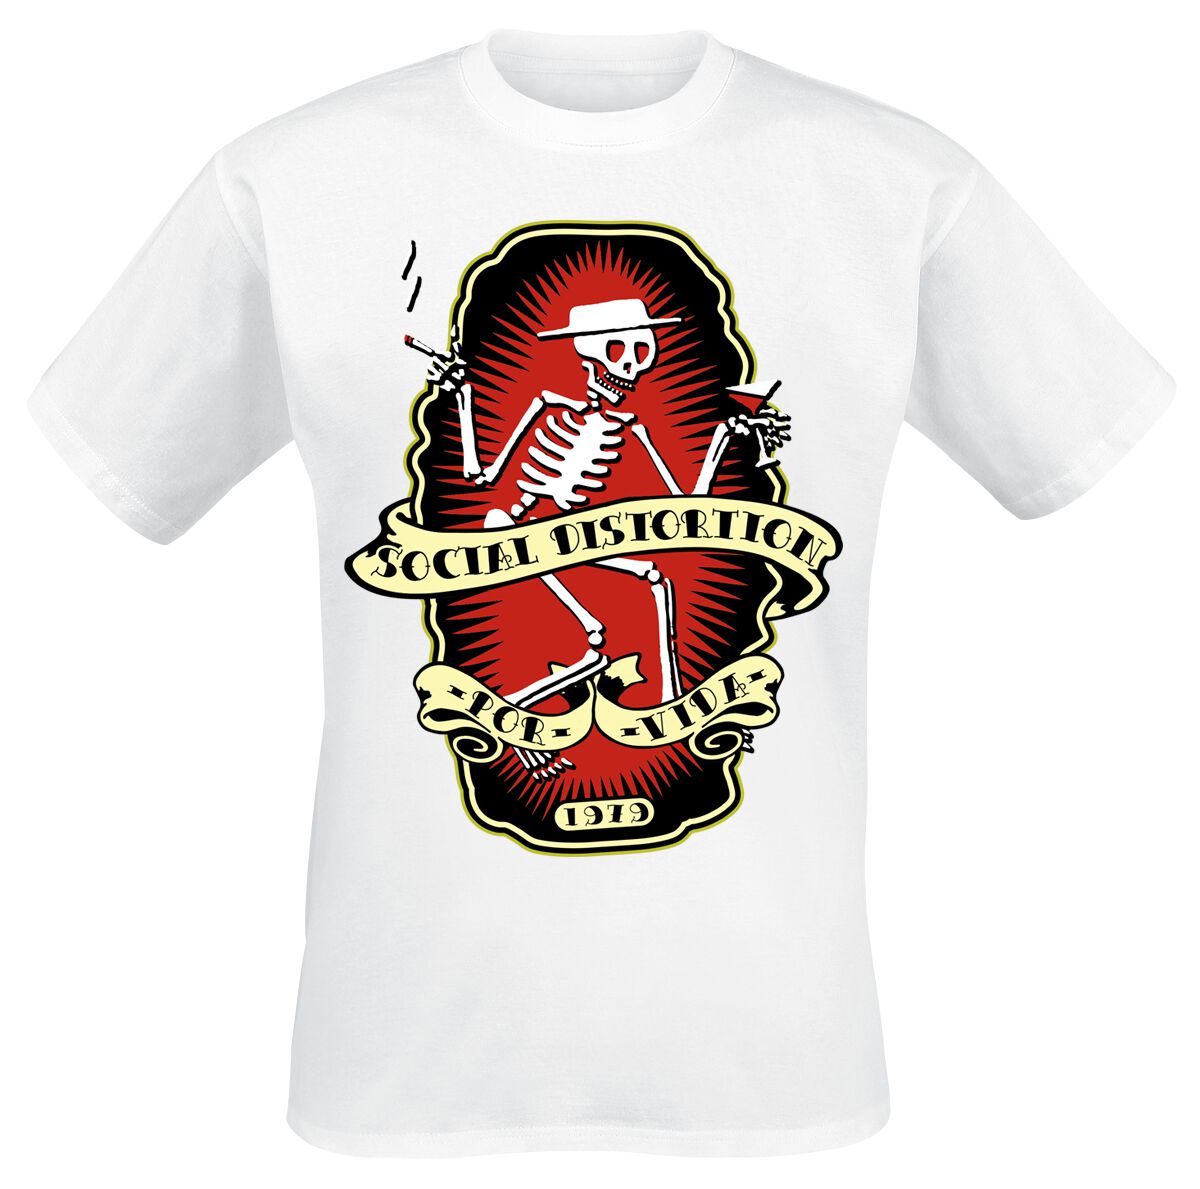 Social Distortion T-Shirt - Por Vida - S bis 3XL - für Männer - Größe XXL - weiß  - Lizenziertes Merchandise!